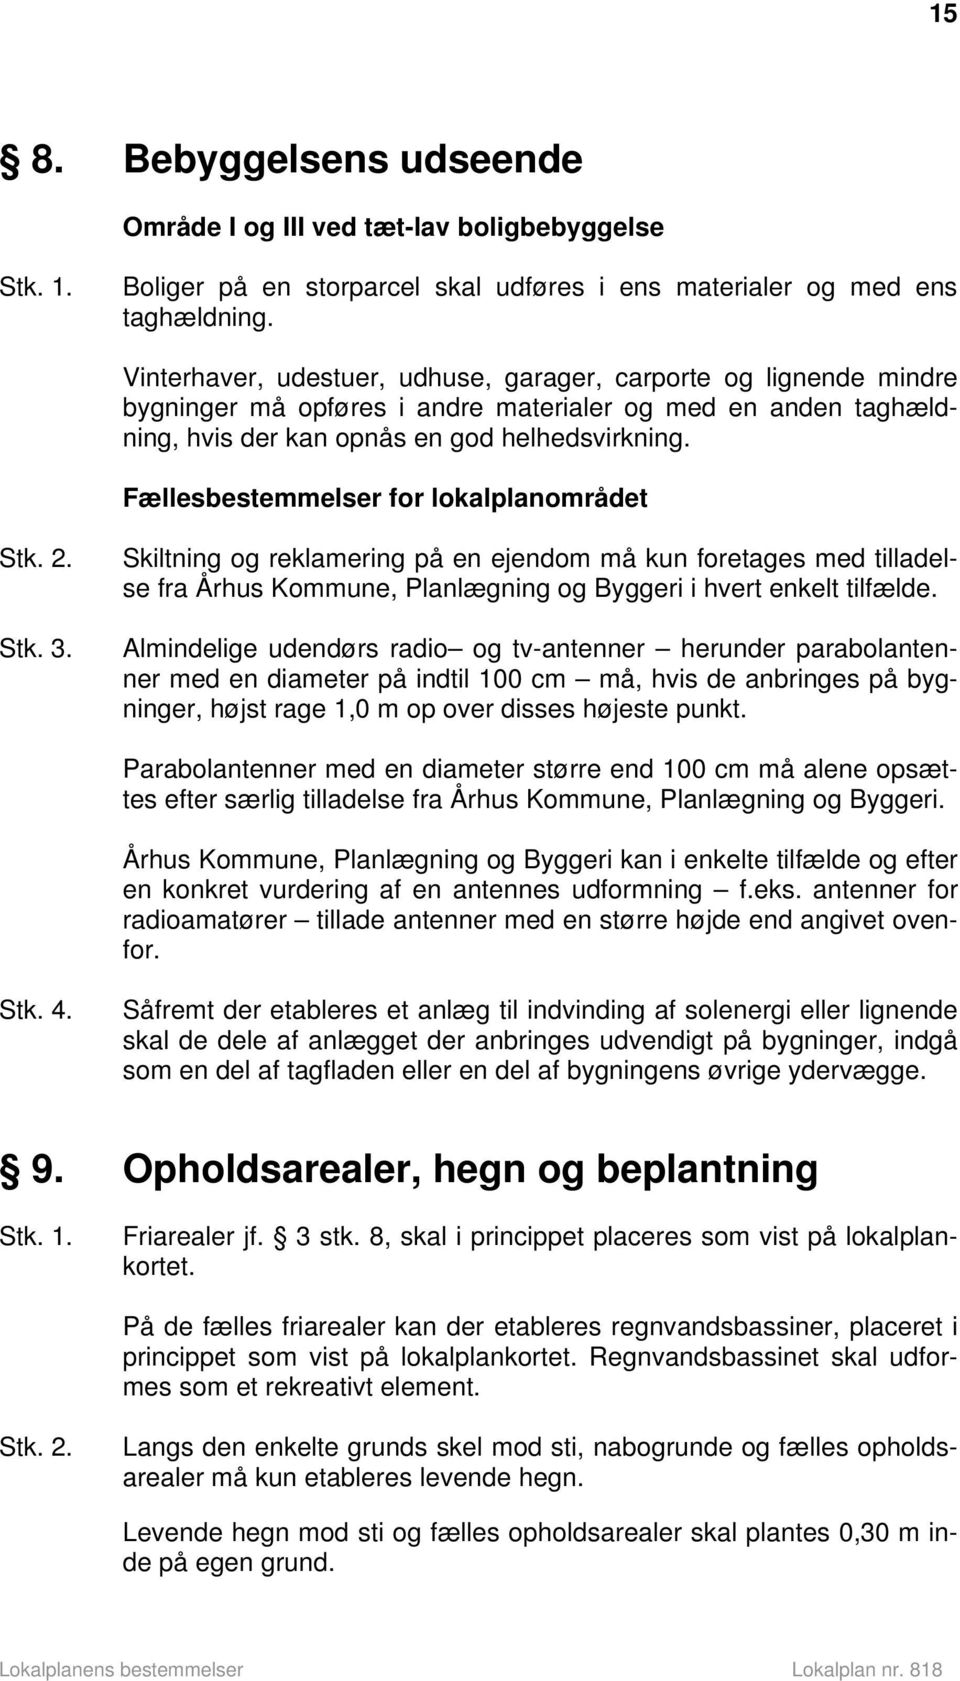 Fællesbestemmelser for lokalplanområdet Stk. 2. Stk. 3. Skiltning og reklamering på en ejendom må kun foretages med tilladelse fra Århus Kommune, Planlægning og Byggeri i hvert enkelt tilfælde.